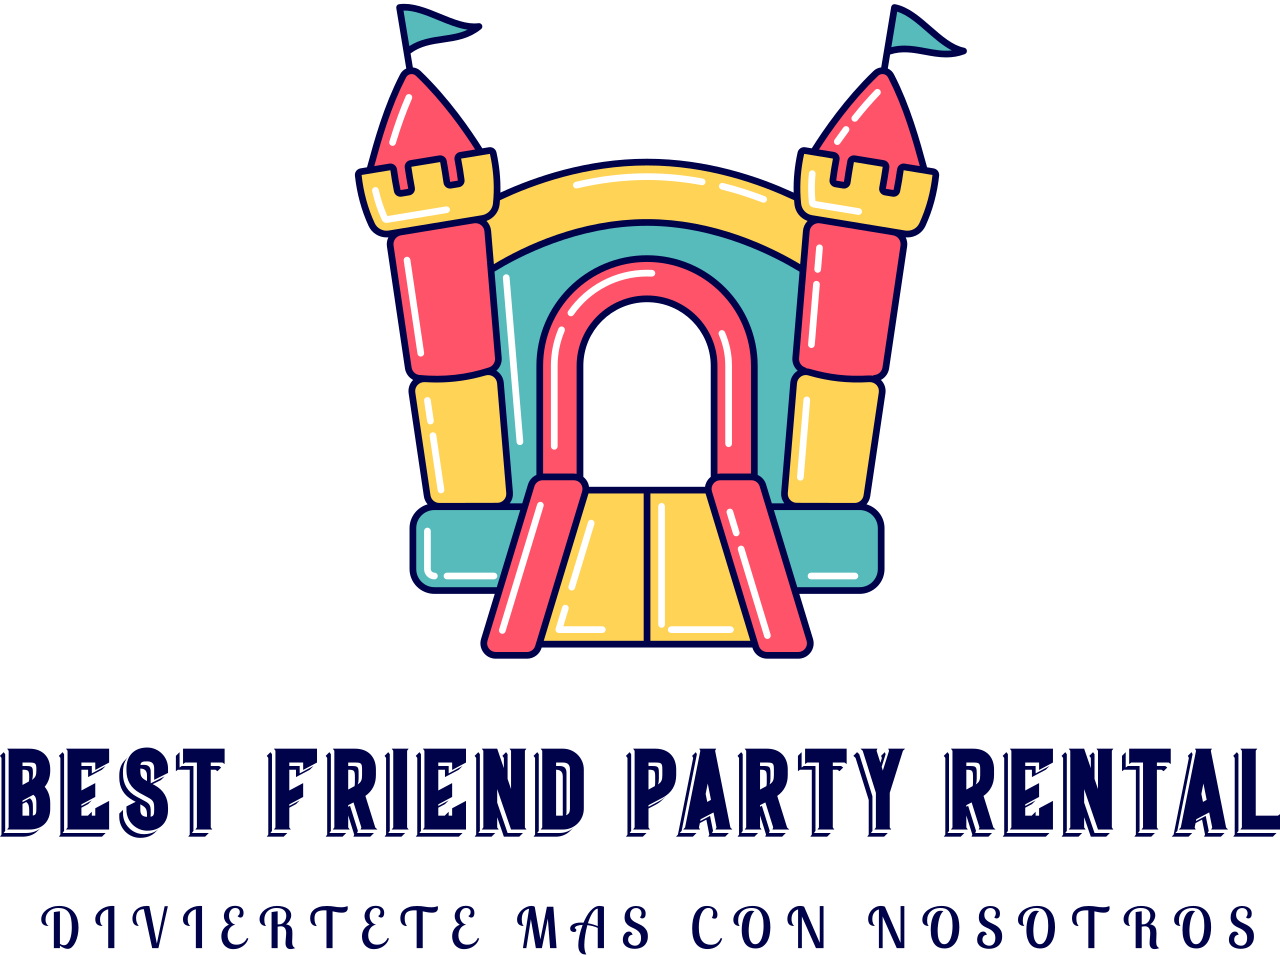 Best Friend Party Rental 's logo